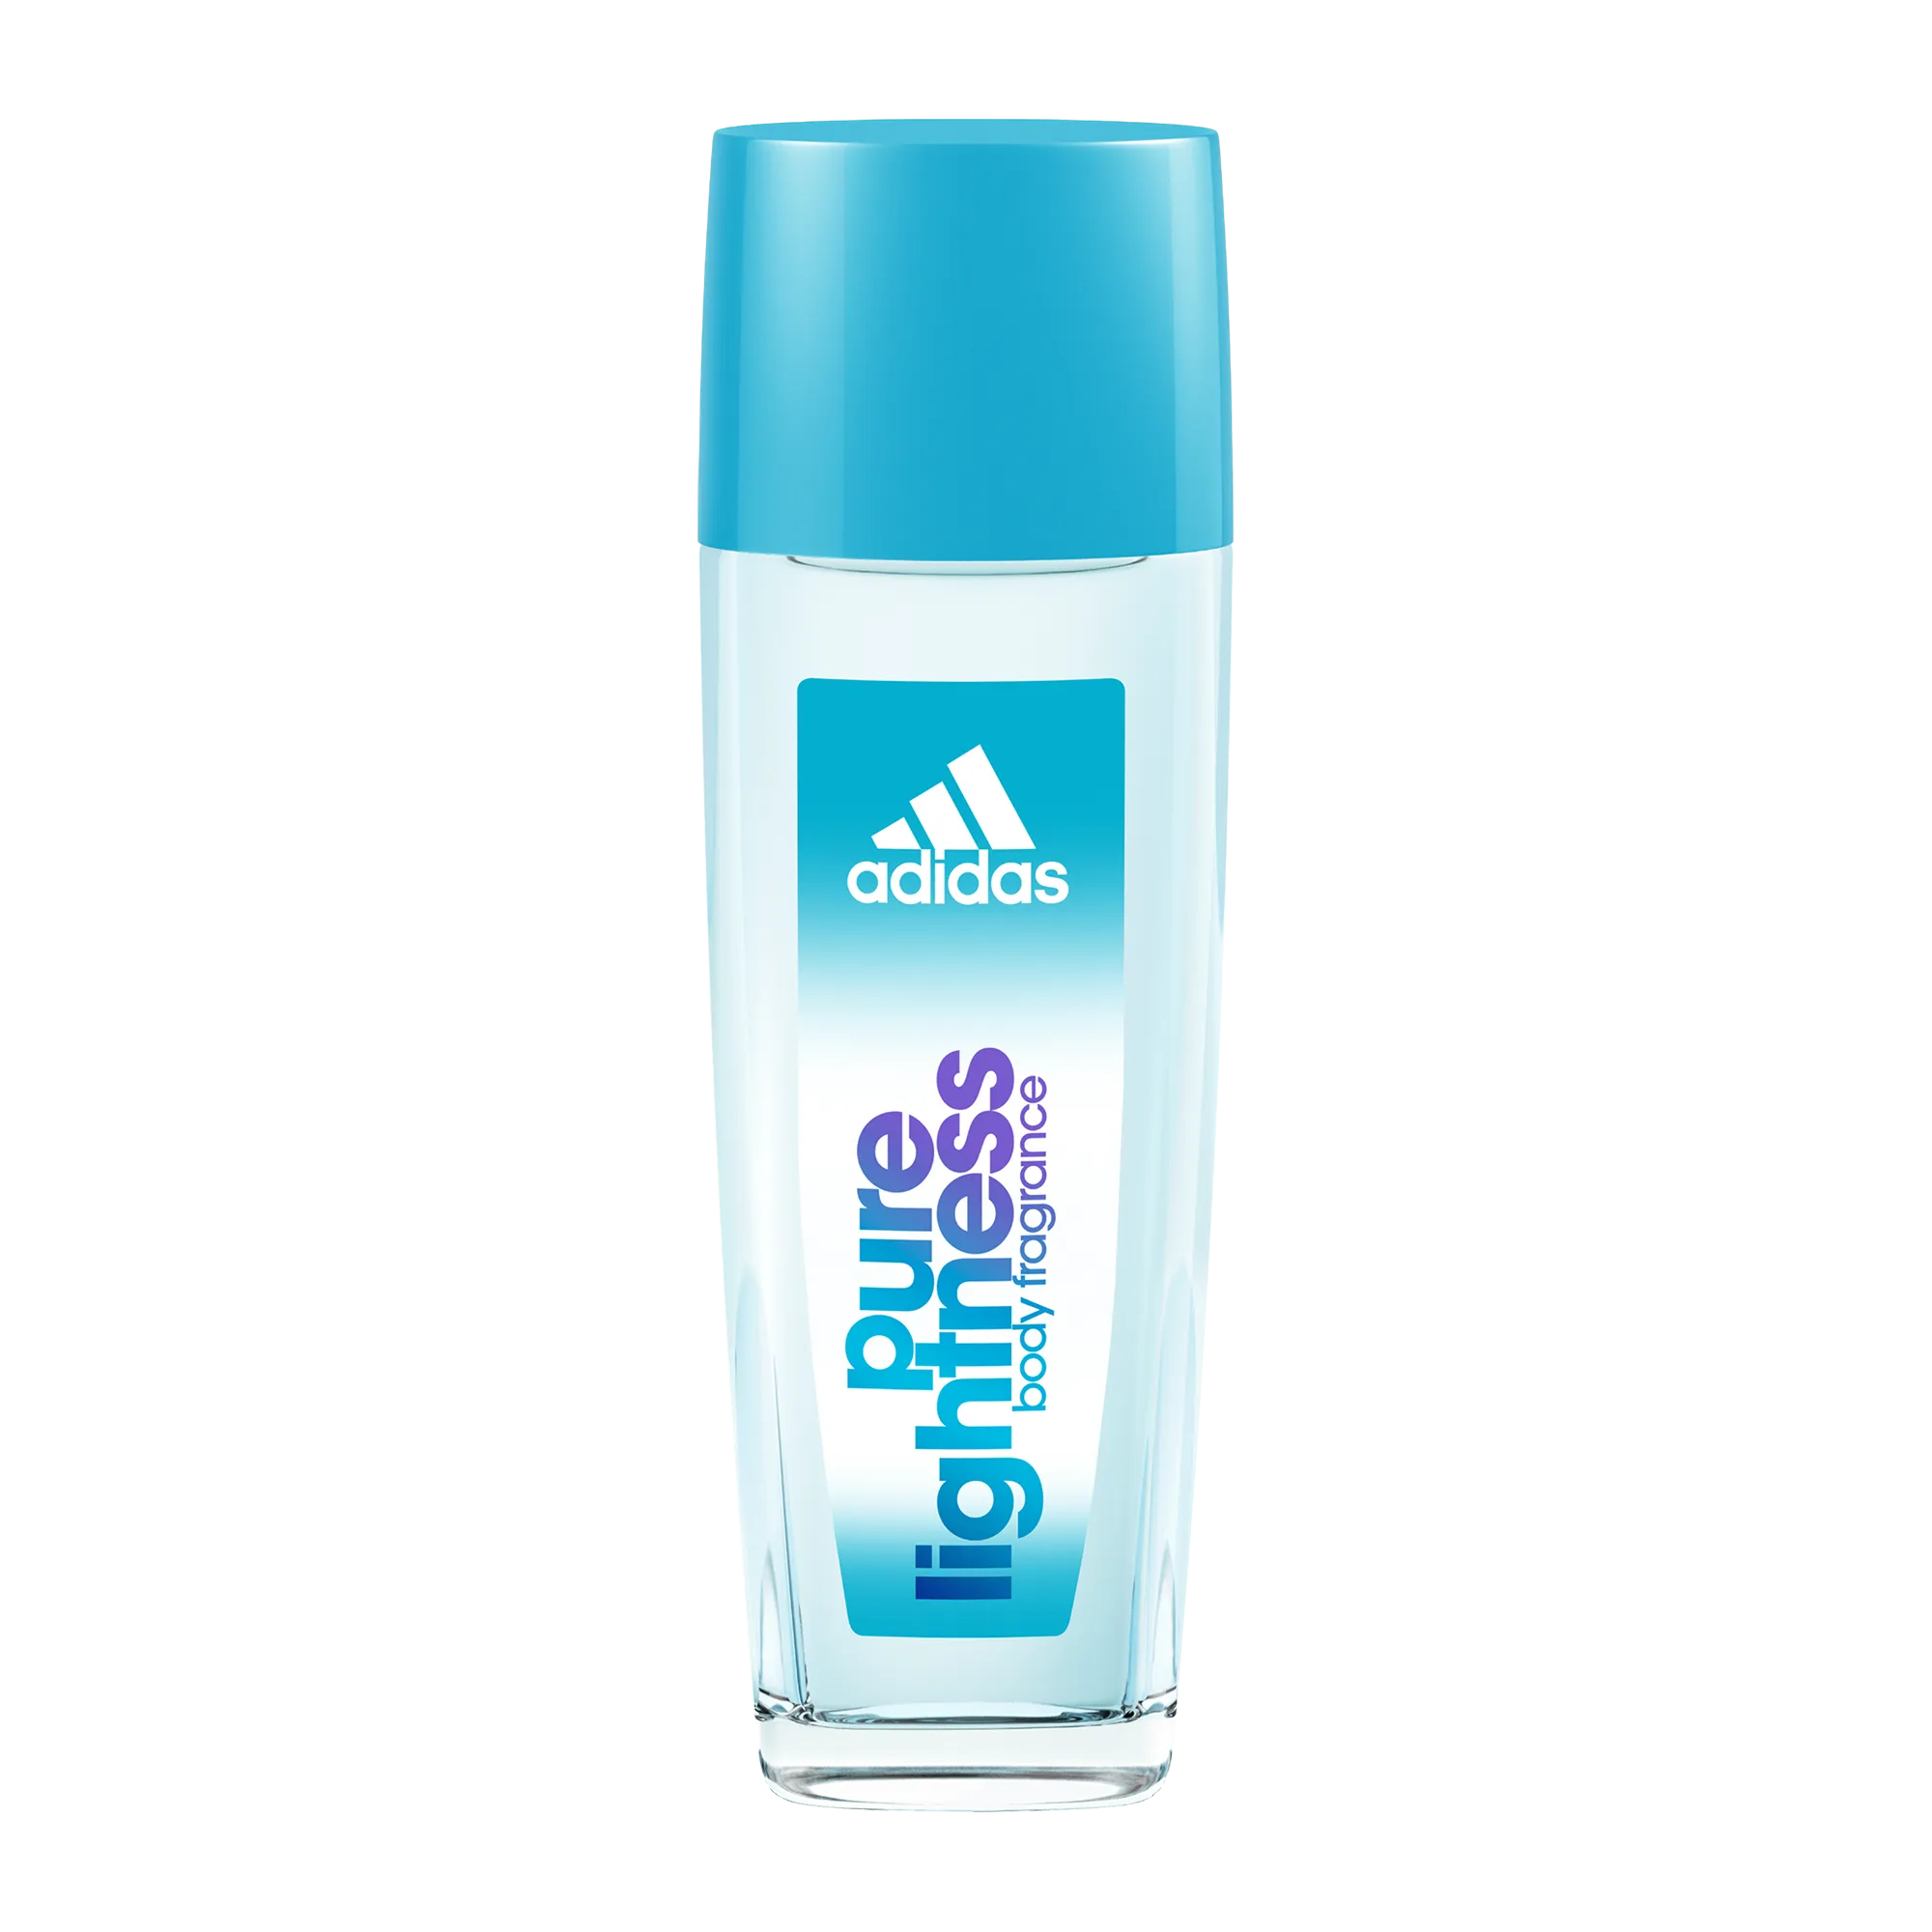 Adidas for Women Pure Lightness Odświeżający Dezodorant z atomizerem dla kobiet, 75 ml